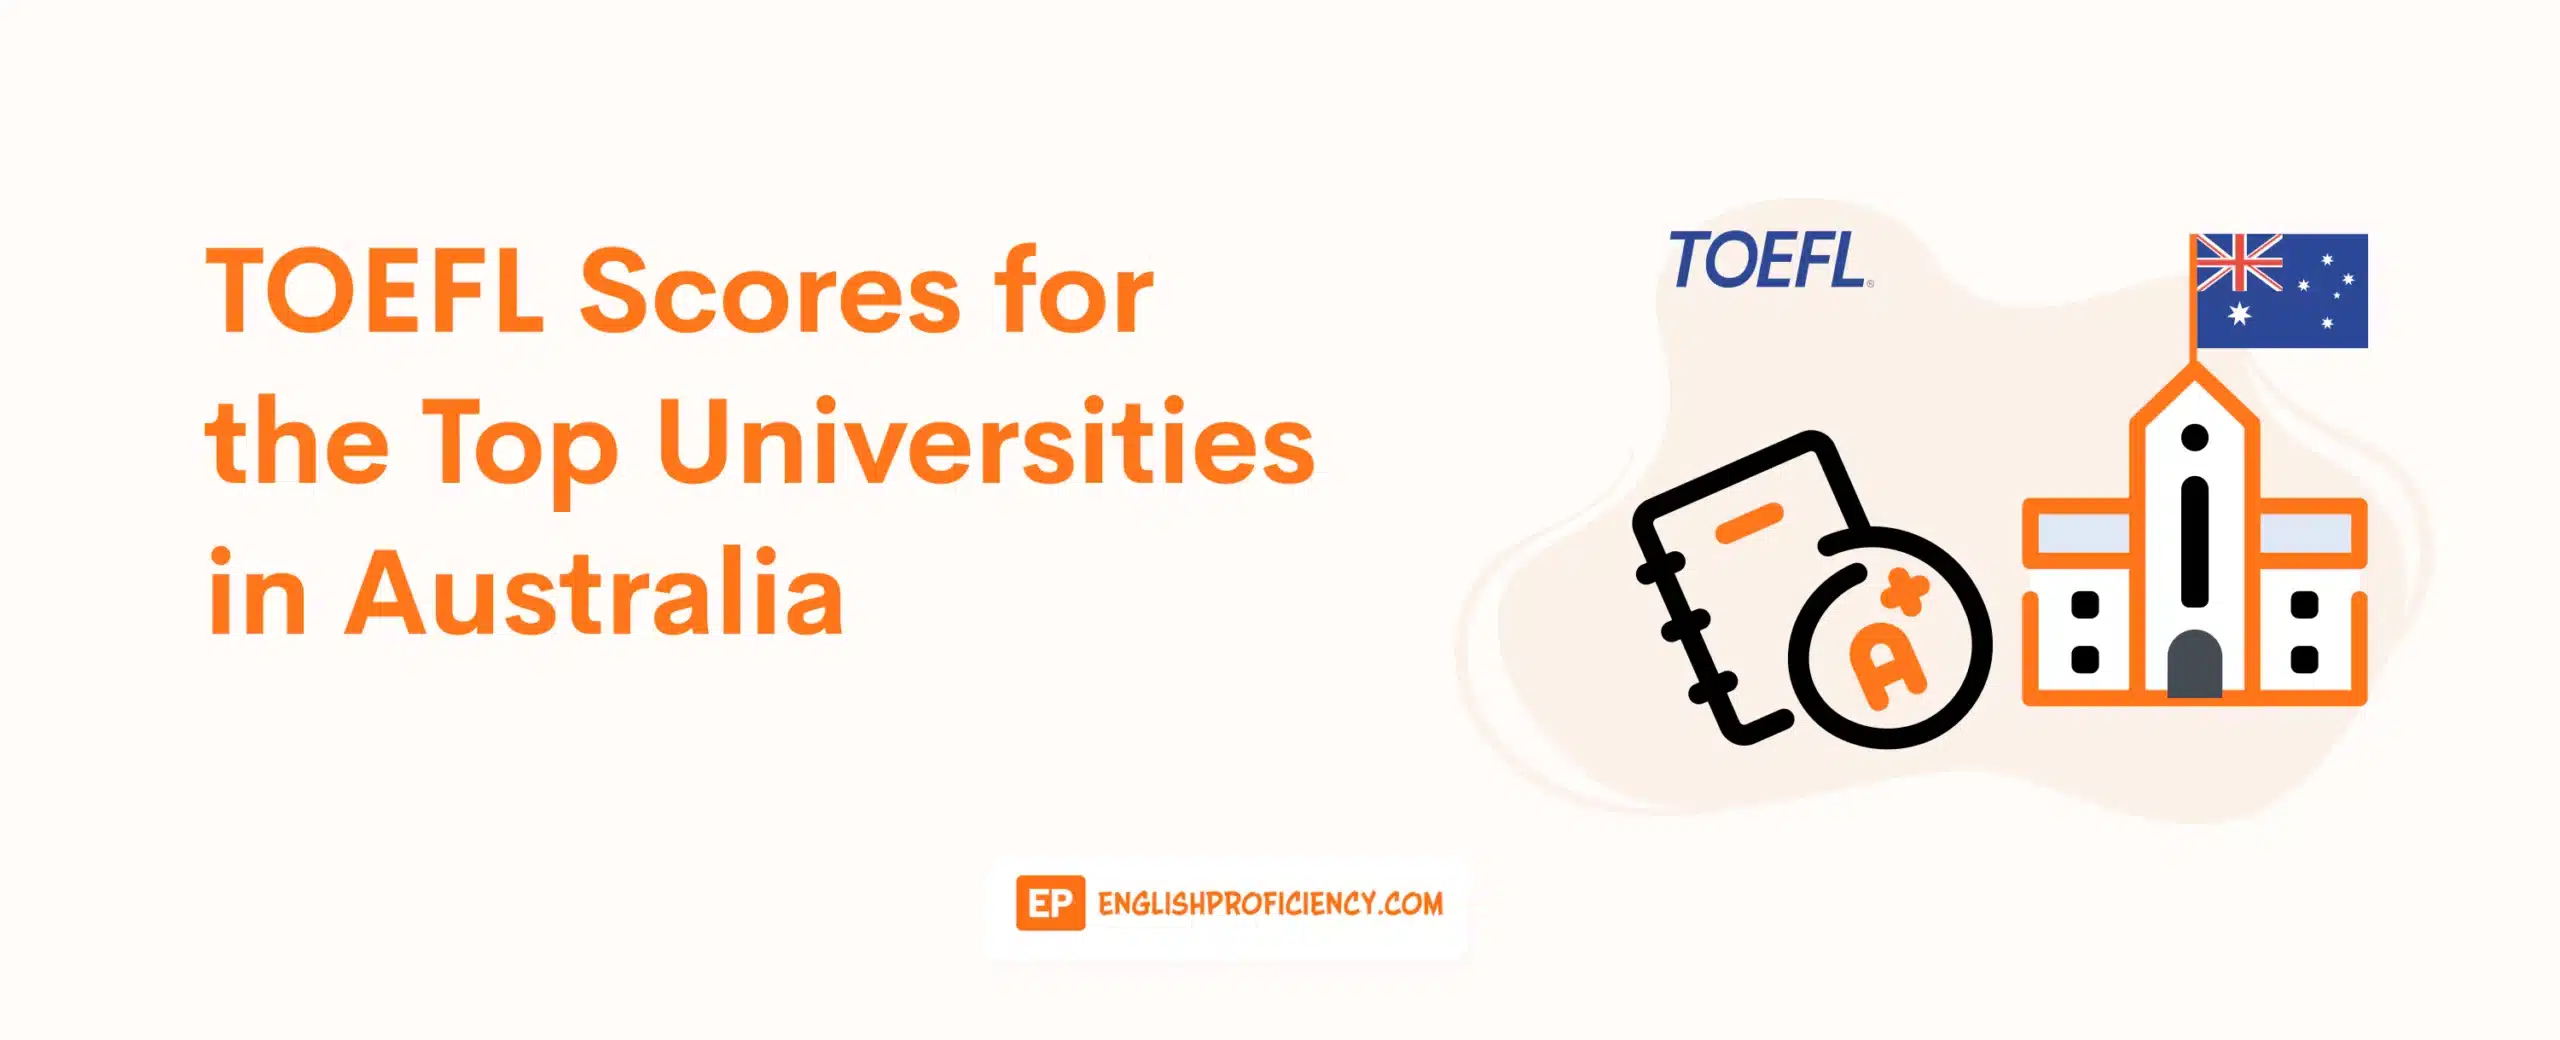 TOEFL Scores for the Top Universities in Australia 